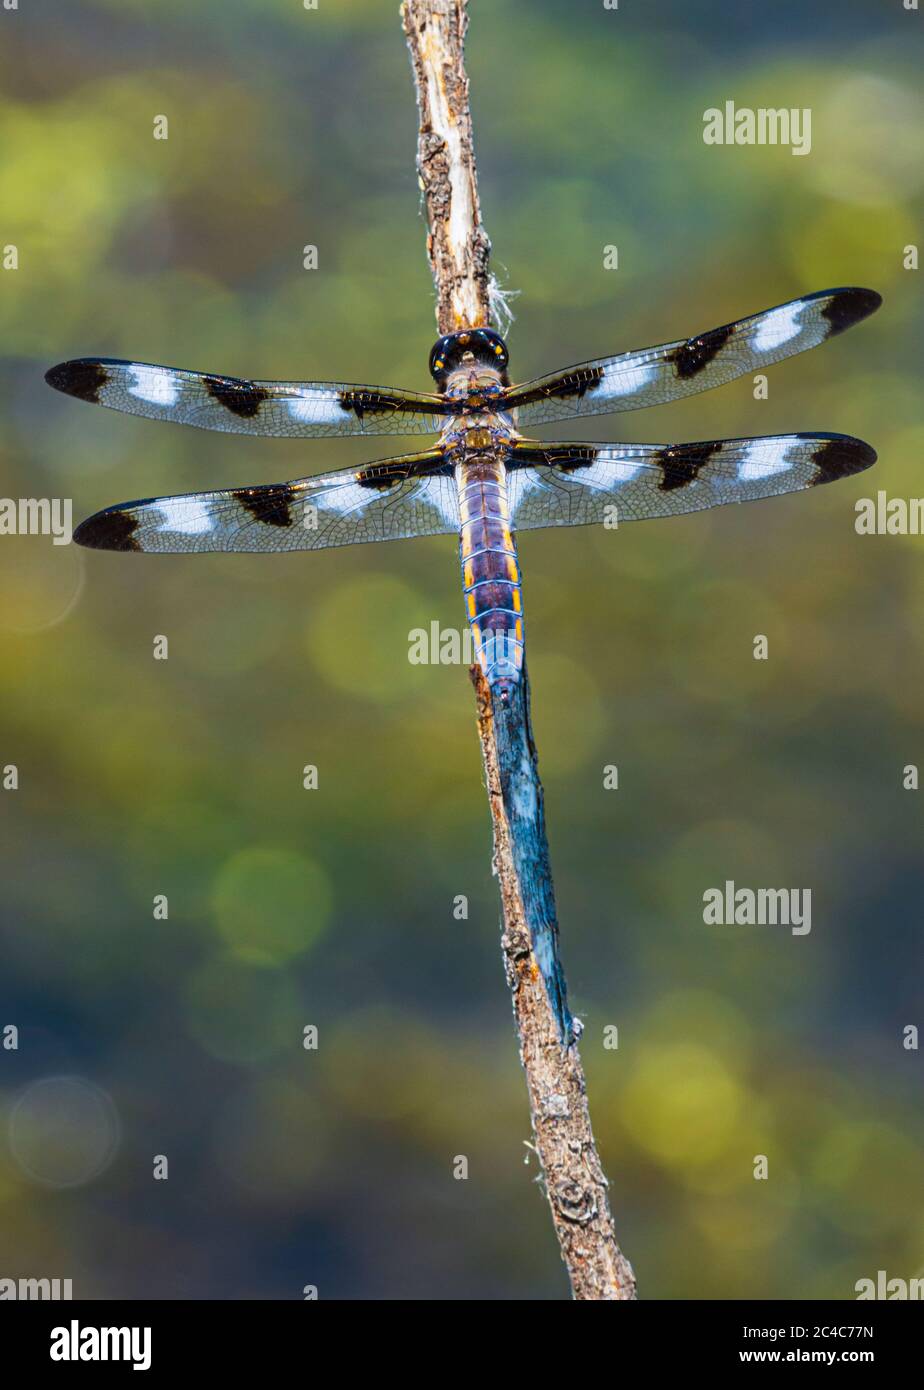 Dragonfly skimmer a dodici punte (Libellula pulchella) che riposa sul gambo del salice nello stagno della palude, Castle Rock Colorado USA. Foto scattata a giugno. Foto Stock